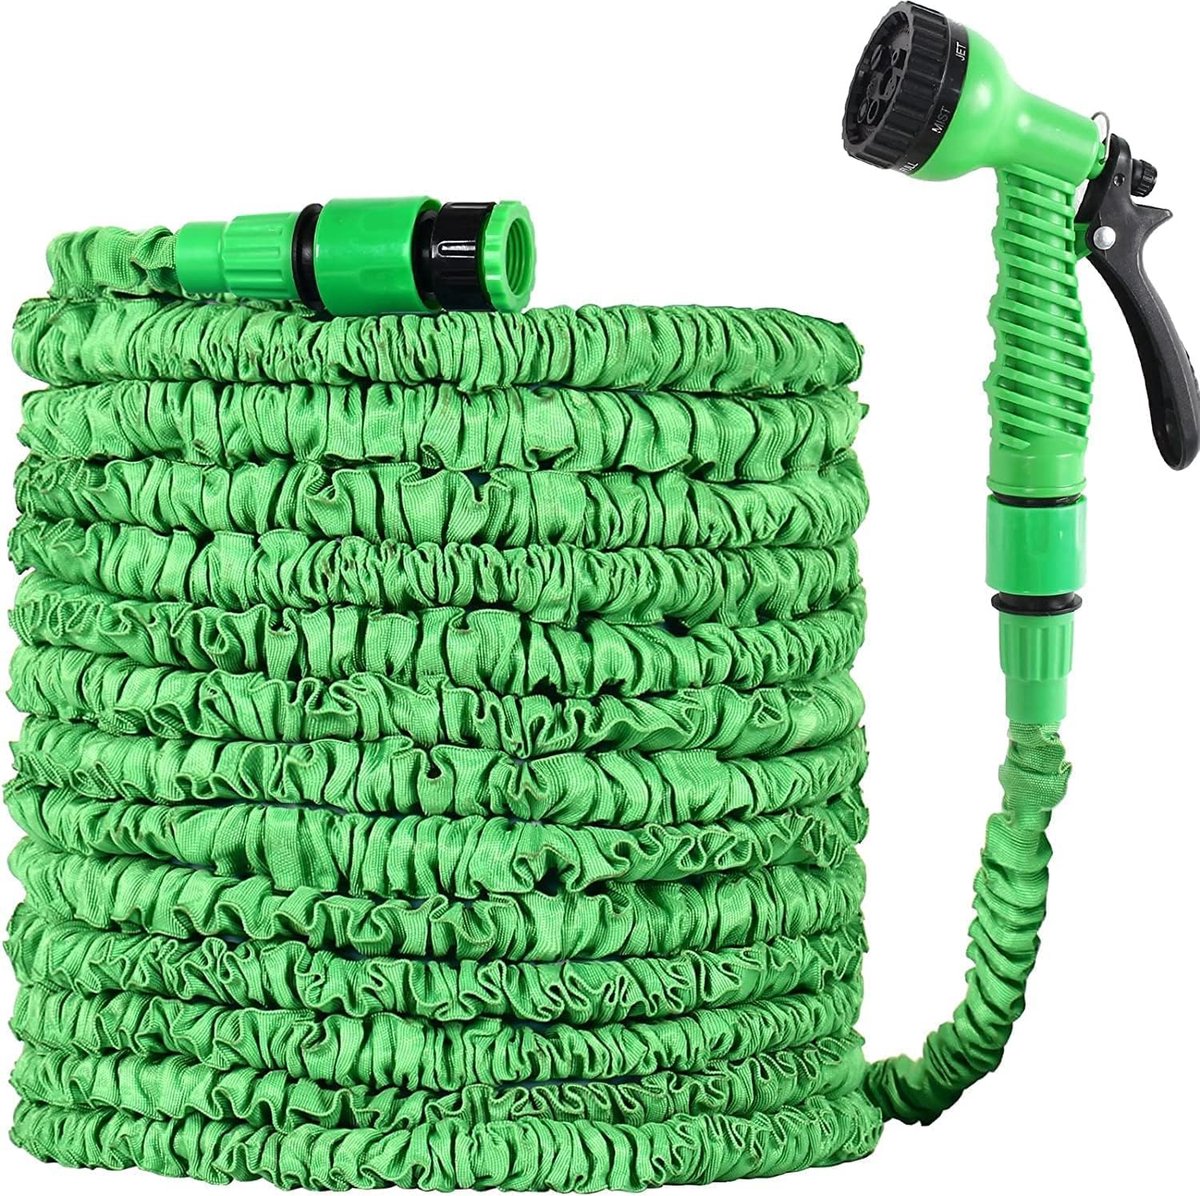 tuinslang flexibel 22 m flexibele Gardena slang waterslang met 7 modi uitbreidbare slang spuitpistool, tuinslanghaspel, magische waterpijp (22 m, groen)